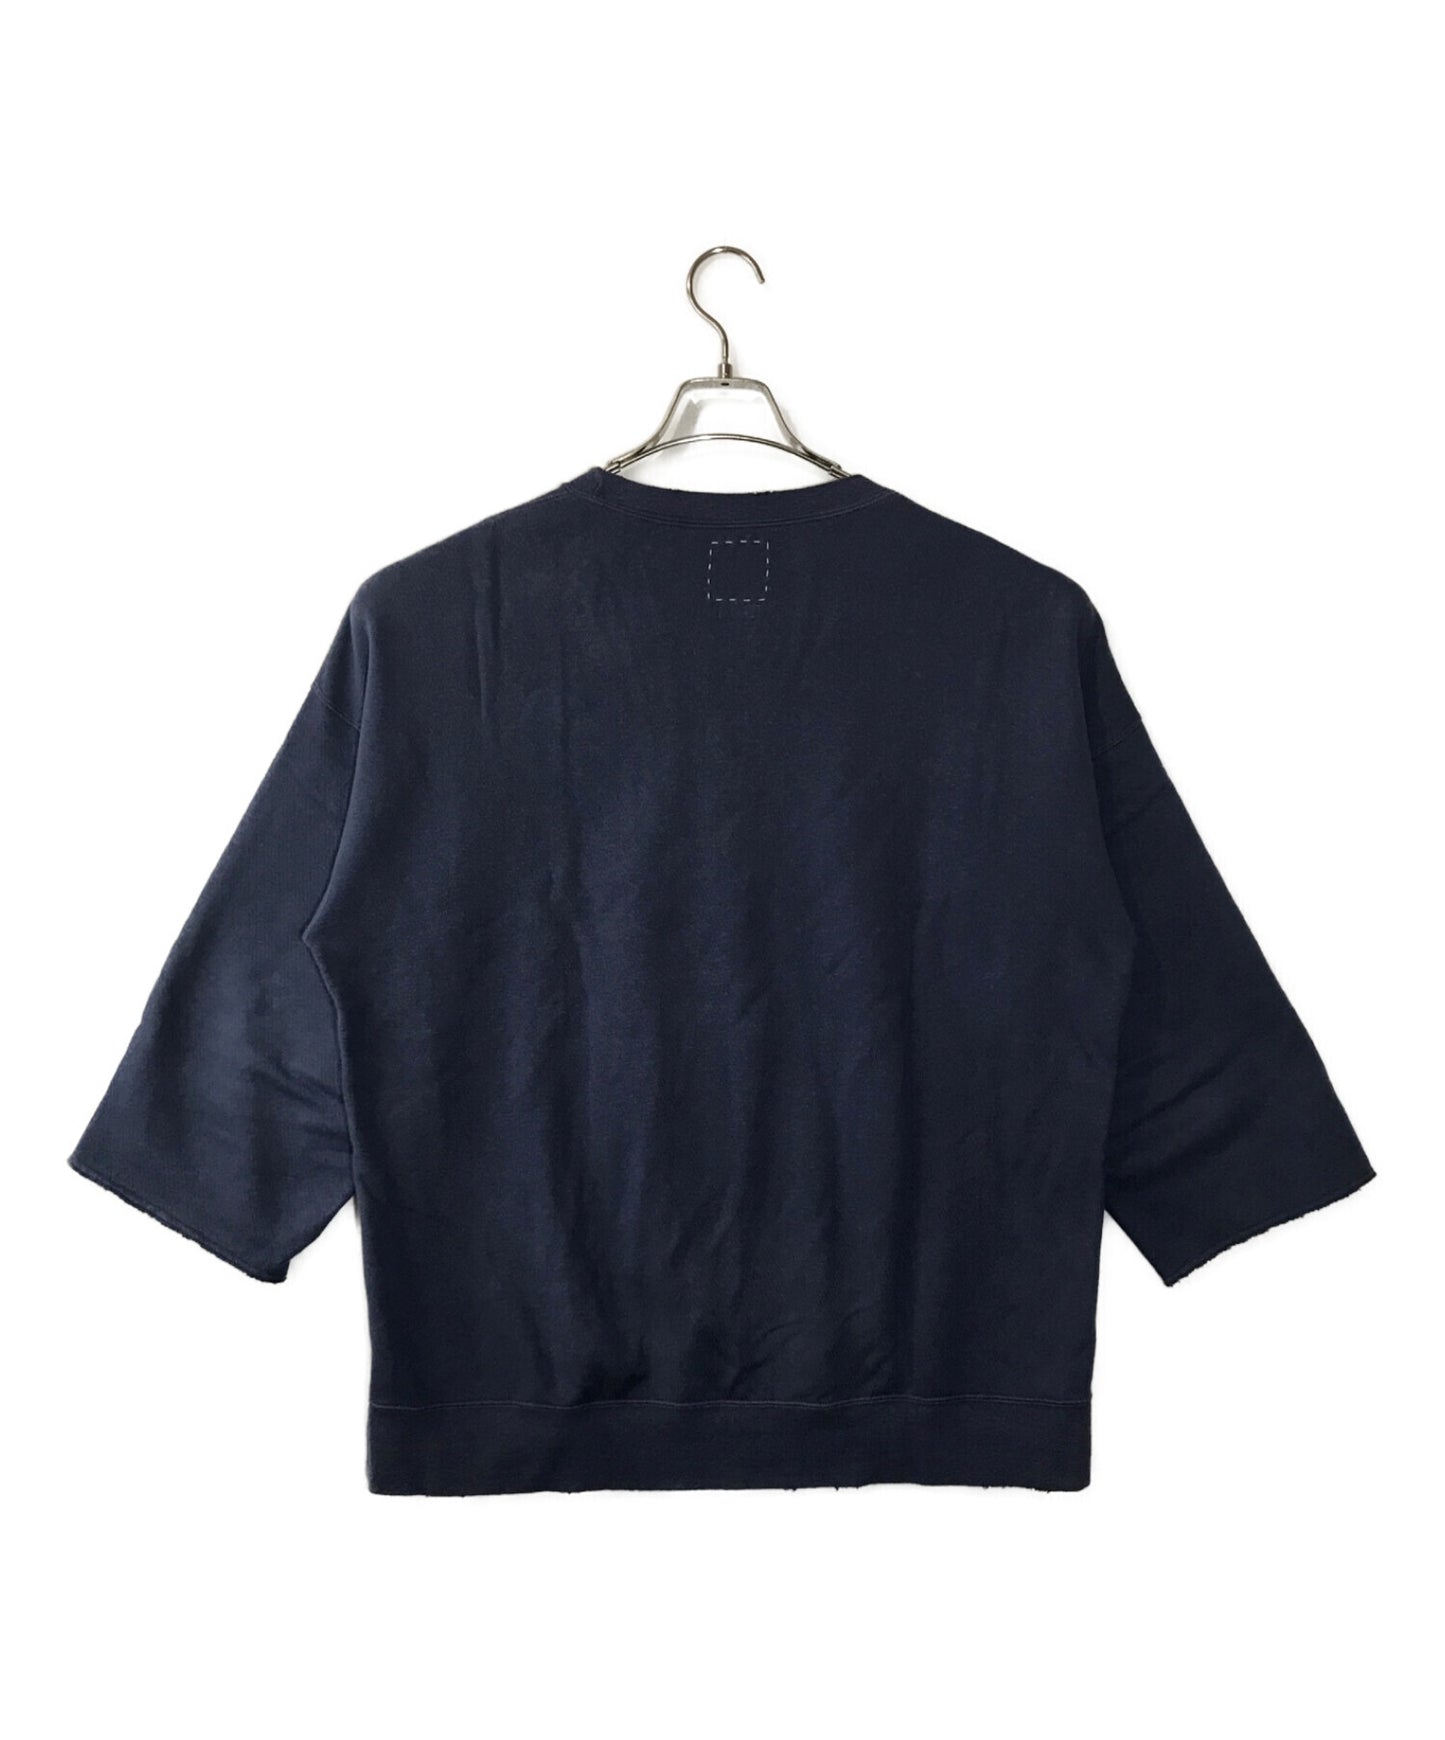 [Pre-owned] VISVIM JUMBO SWEAT 3/4 (UNEVEN DYE) Jumbo Sweatshirt 0121205010010